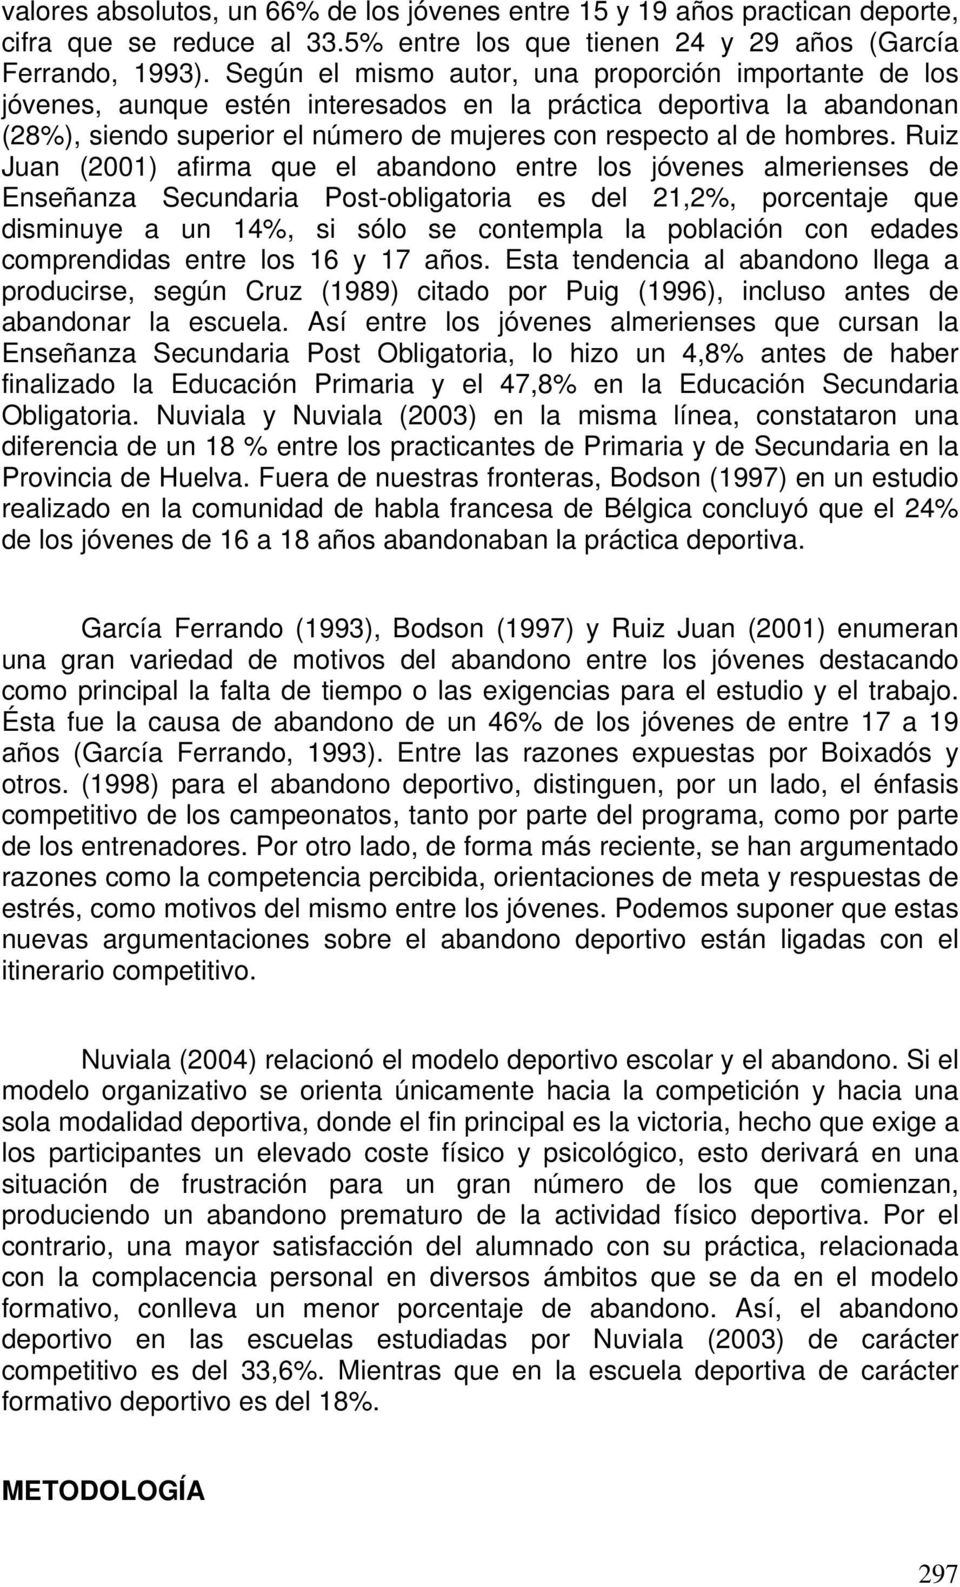 Ruiz Juan (2001) afirma que el abandono entre los jóvenes almerienses de Enseñanza Secundaria Post-obligatoria es del 21,2%, porcentaje que disminuye a un 14%, si sólo se contempla la población con